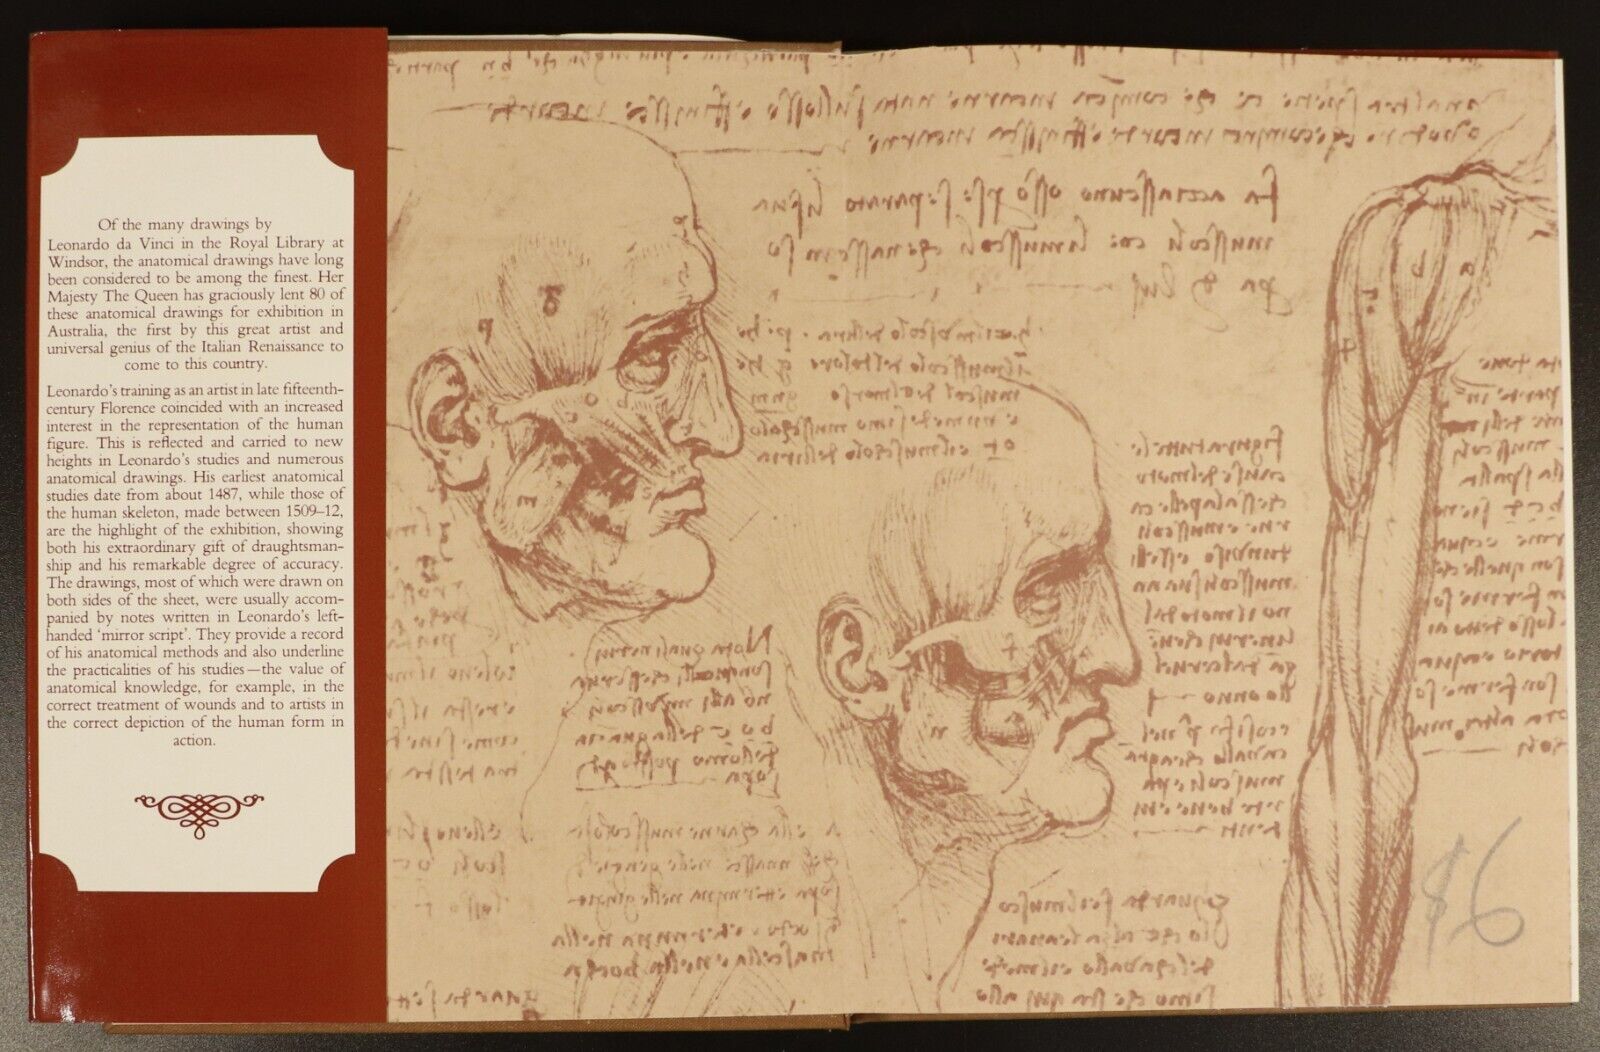 1983 Leonardo Da Vinci Anatomical DrawingsFrom Windsor Castle Art Reference Book